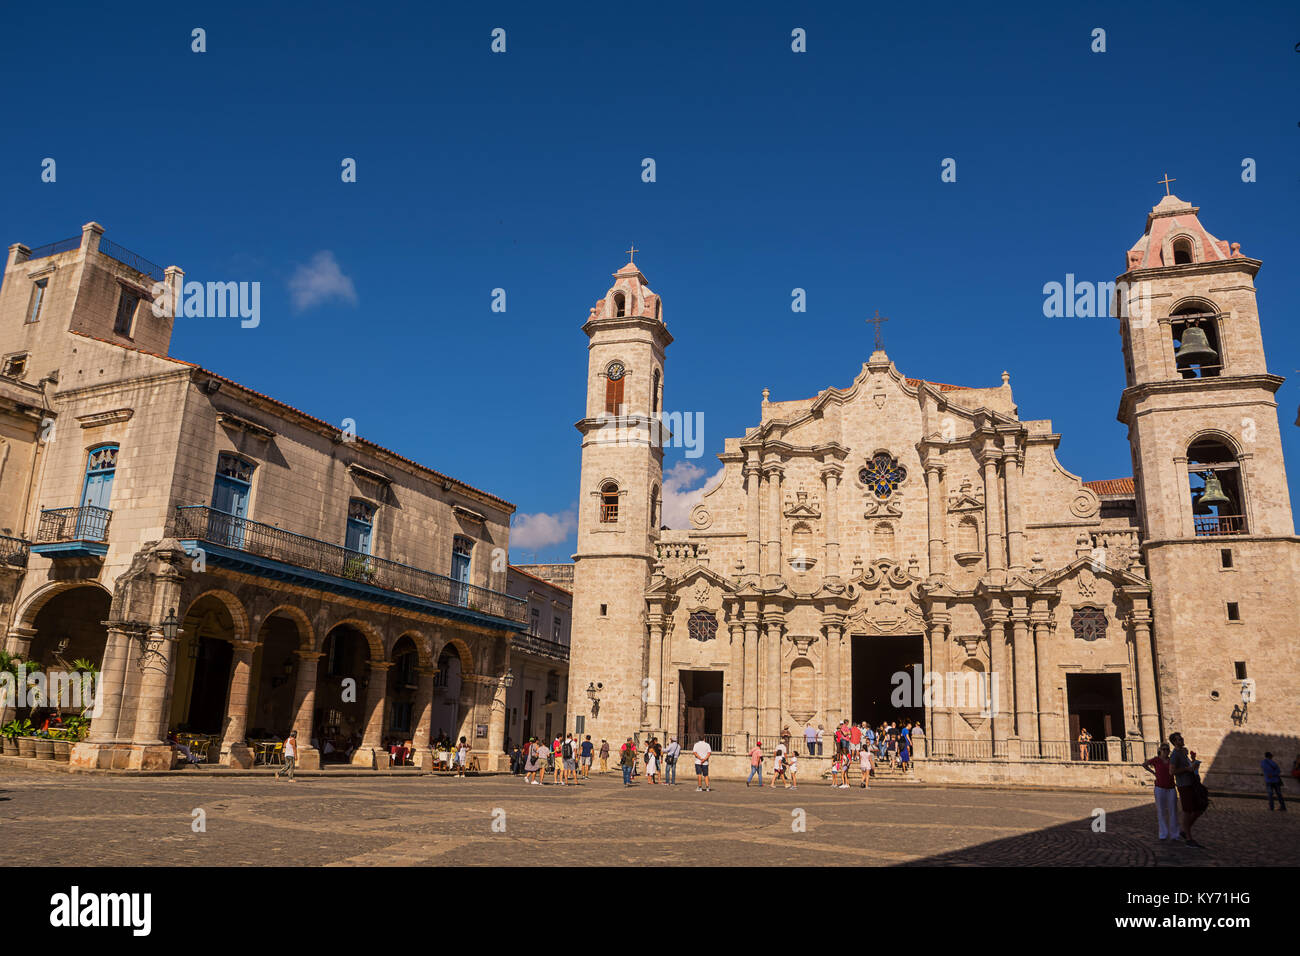 La Havane, Cuba - décembre 3, 2017 : Square et église cathédrale de La Havane (Cuba) et les touristes et fidèles dans un dimanche de décembre Banque D'Images